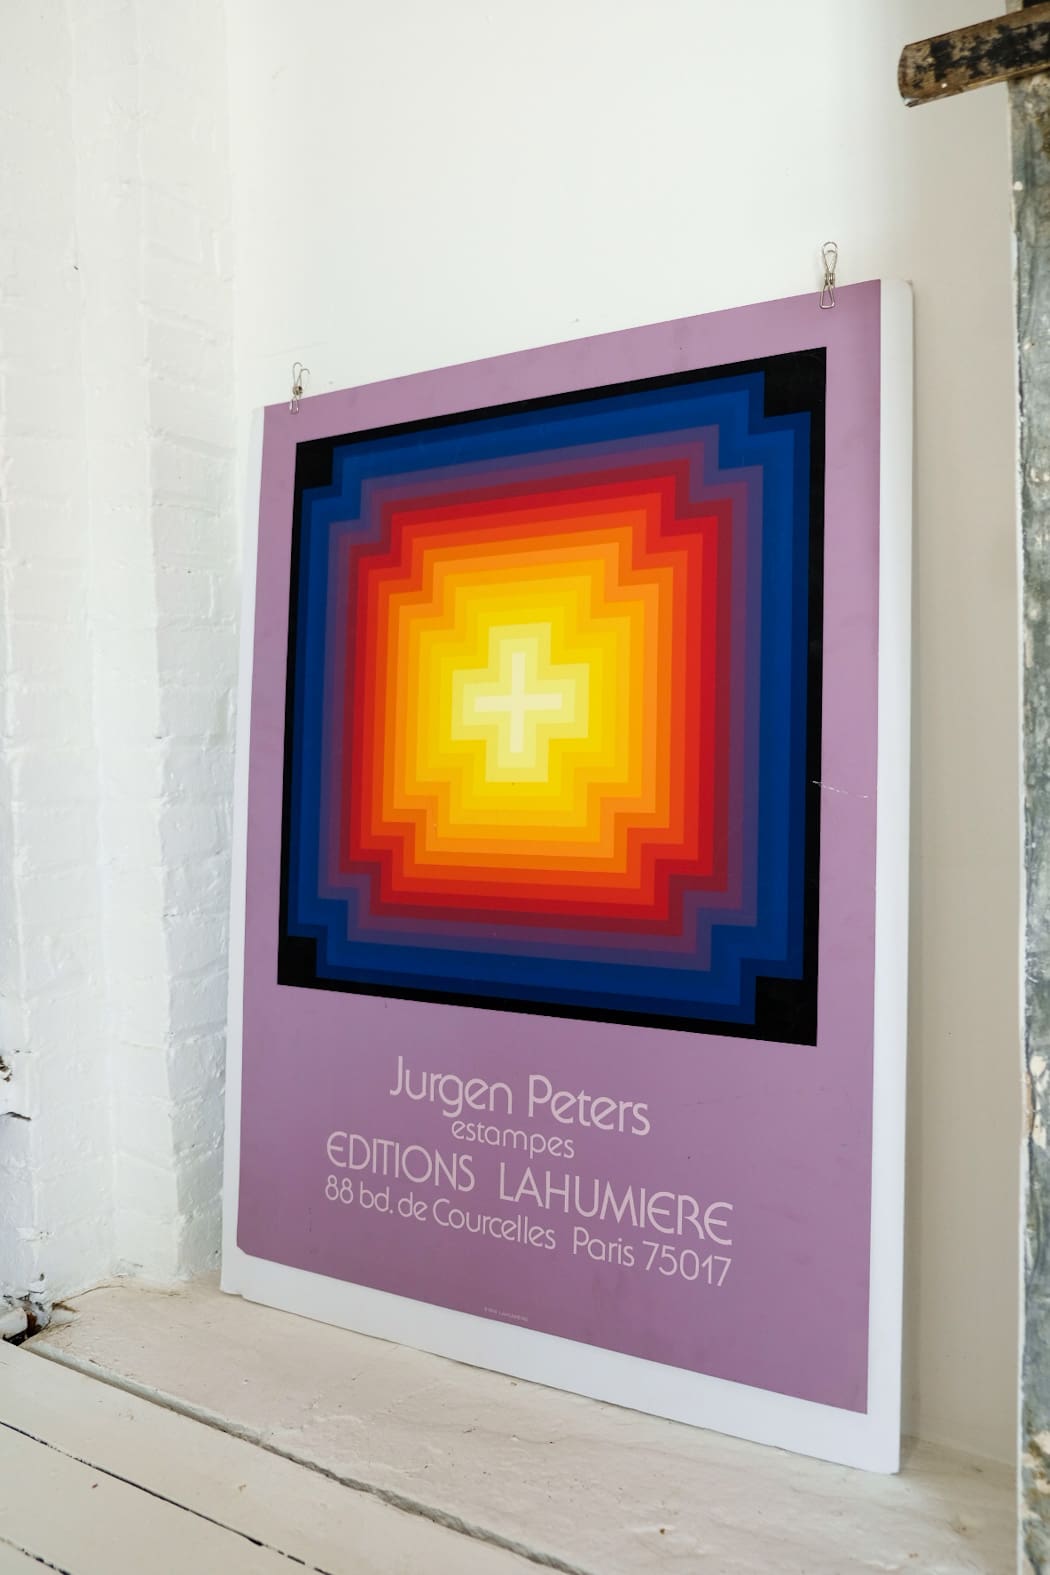 Jurgen Peters Editions Lahumiere Paris 1974